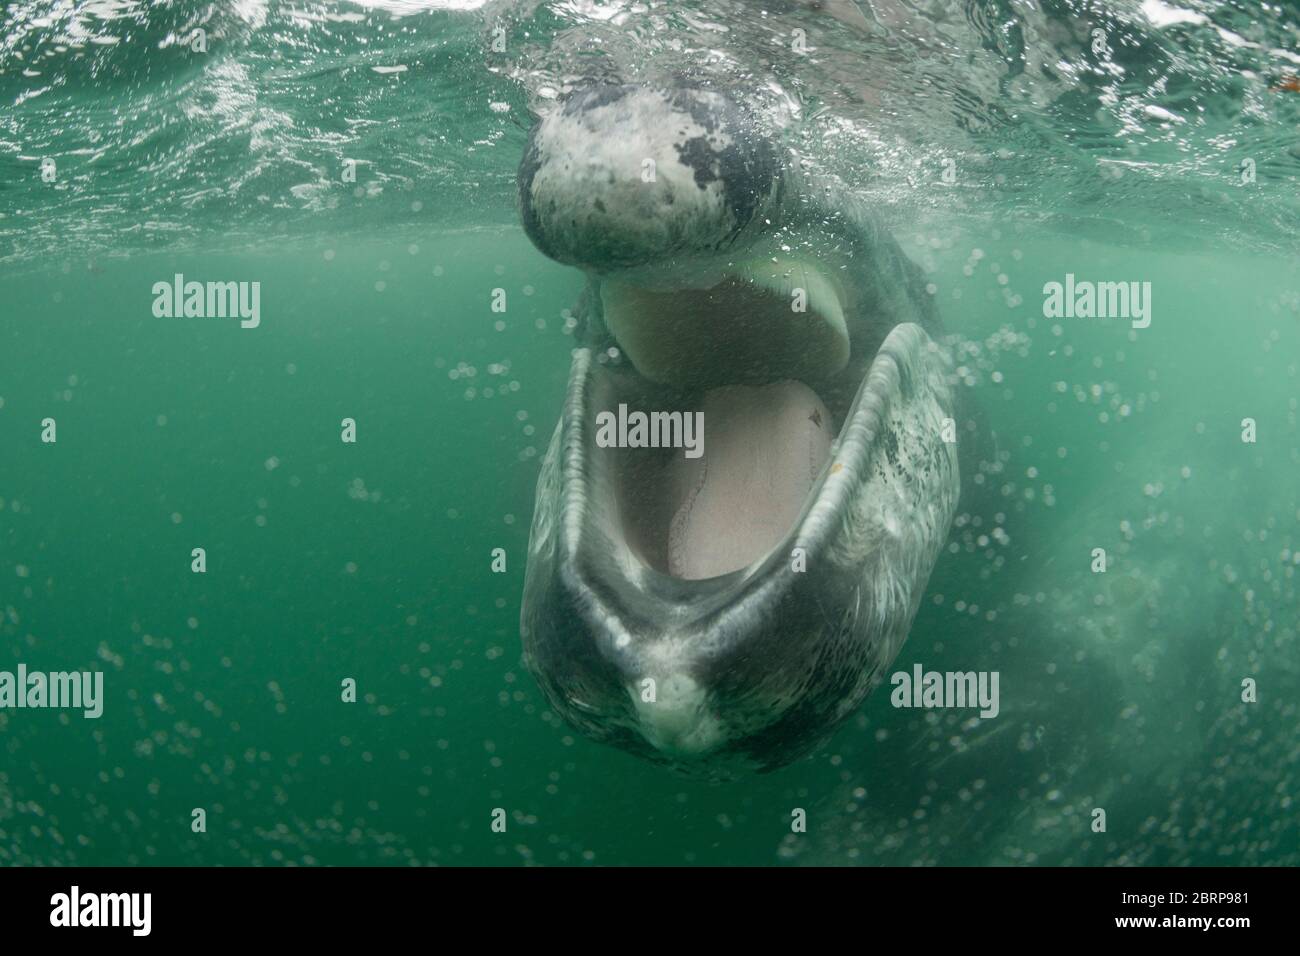 Amichevole vitello grigio balena, Eschrichtius robusta, si avvicina alla fotocamera con bocca aperta, lingua rivelante sul pavimento della mascella inferiore e frangia di ha baleen Foto Stock